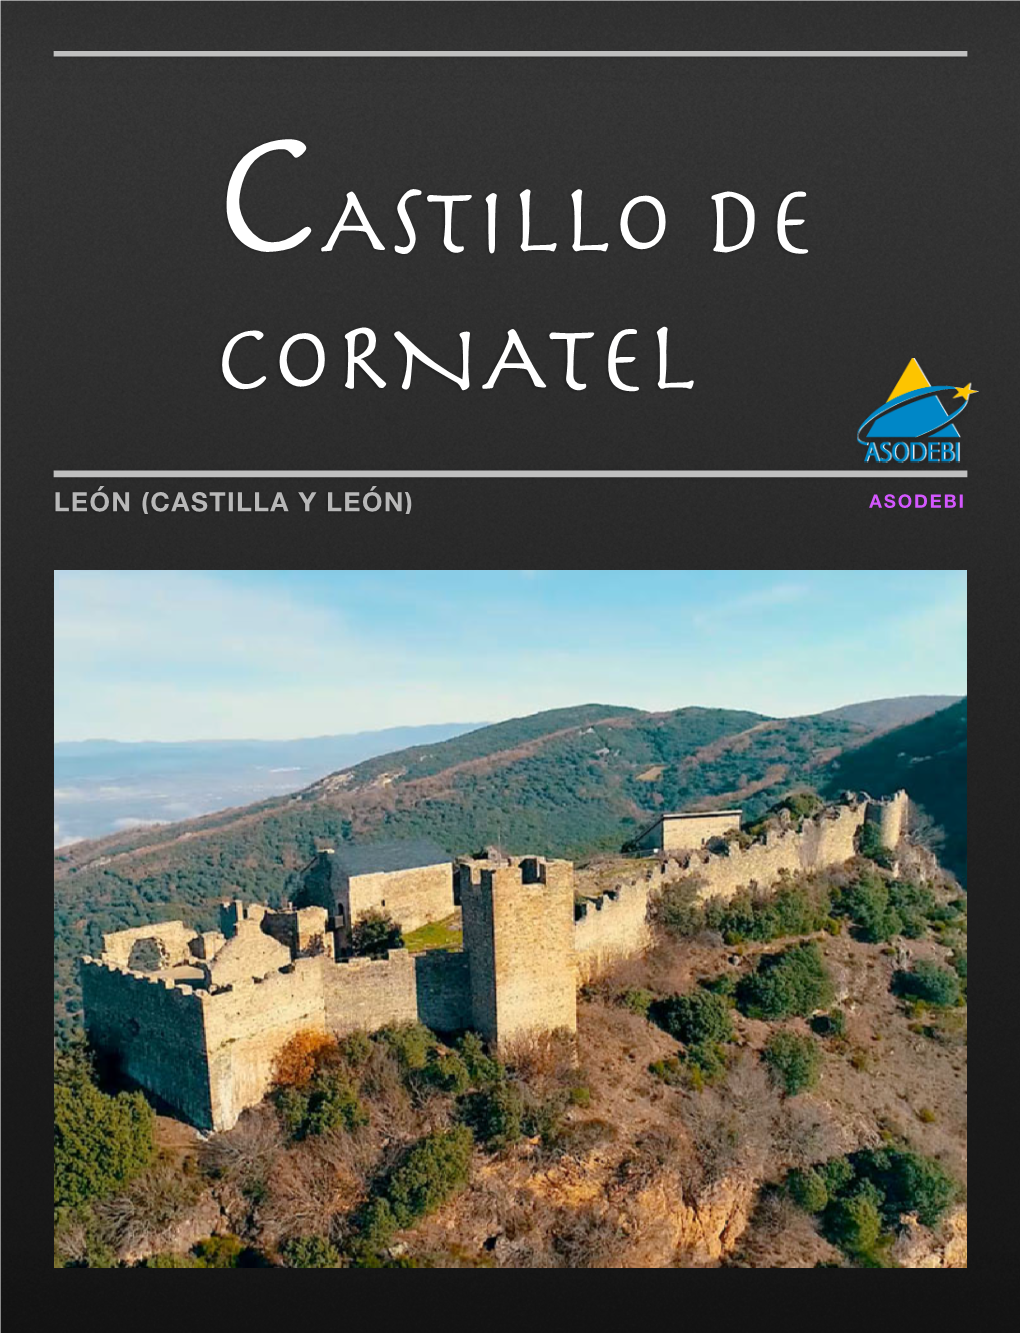 León (Castilla Y León) Asodebi Asodebi Priaranza Del Bierzo (León) Castillo De Cornatel